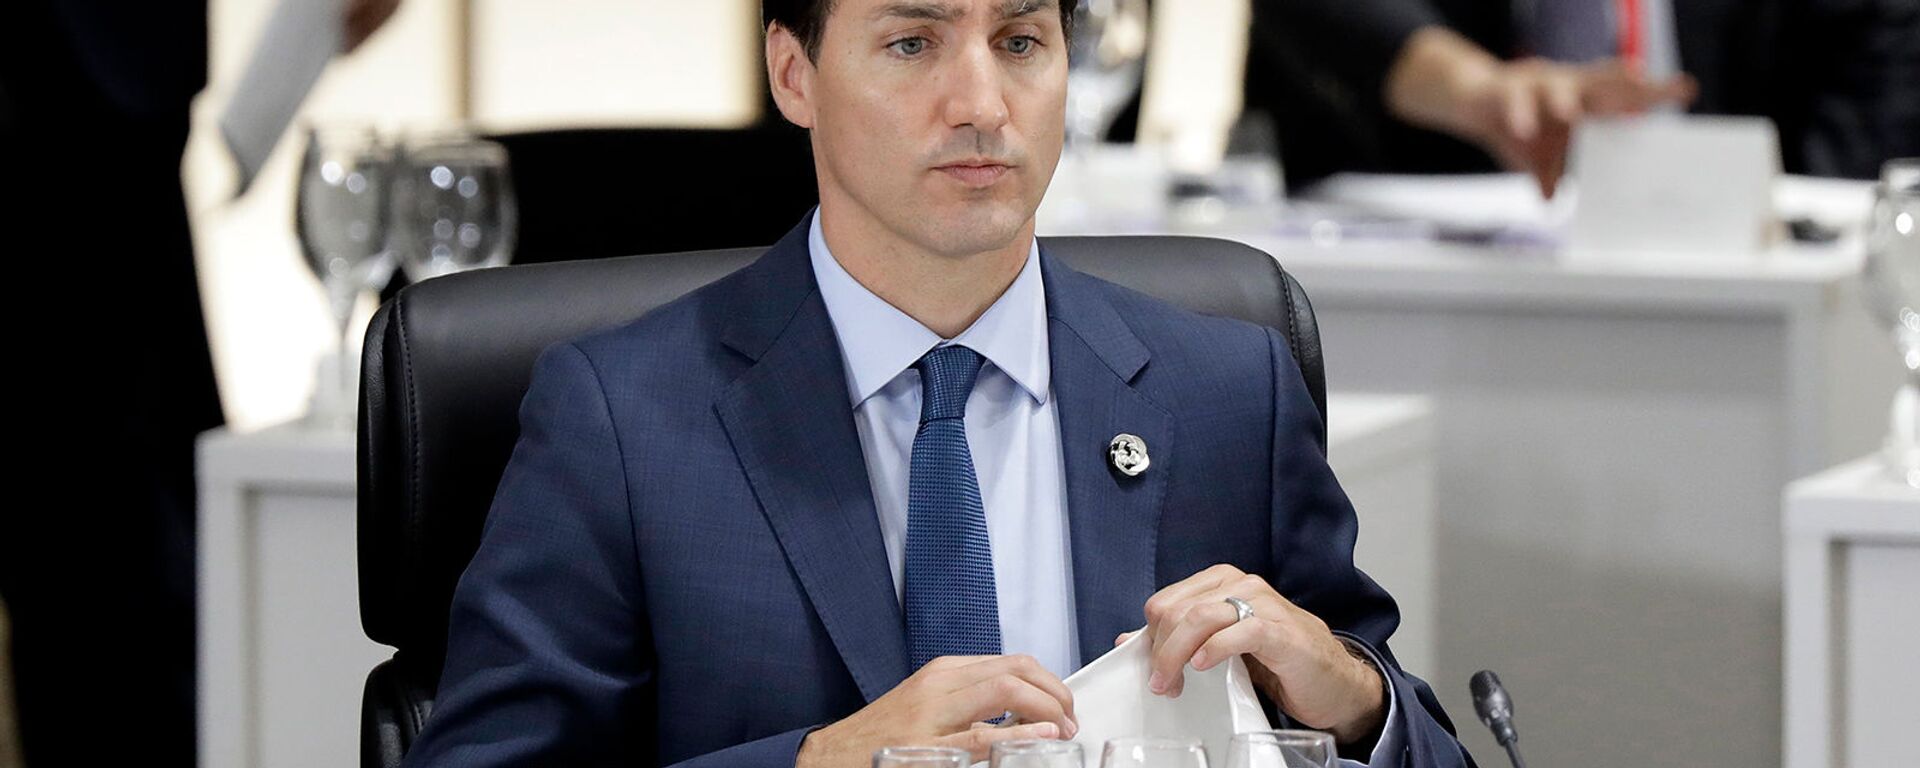 Премьер-министр Канады Джастин Трюдо во время рабочего обеда на саммите G-20 (28 июня 2019). Осака - Sputnik Արմենիա, 1920, 10.02.2022